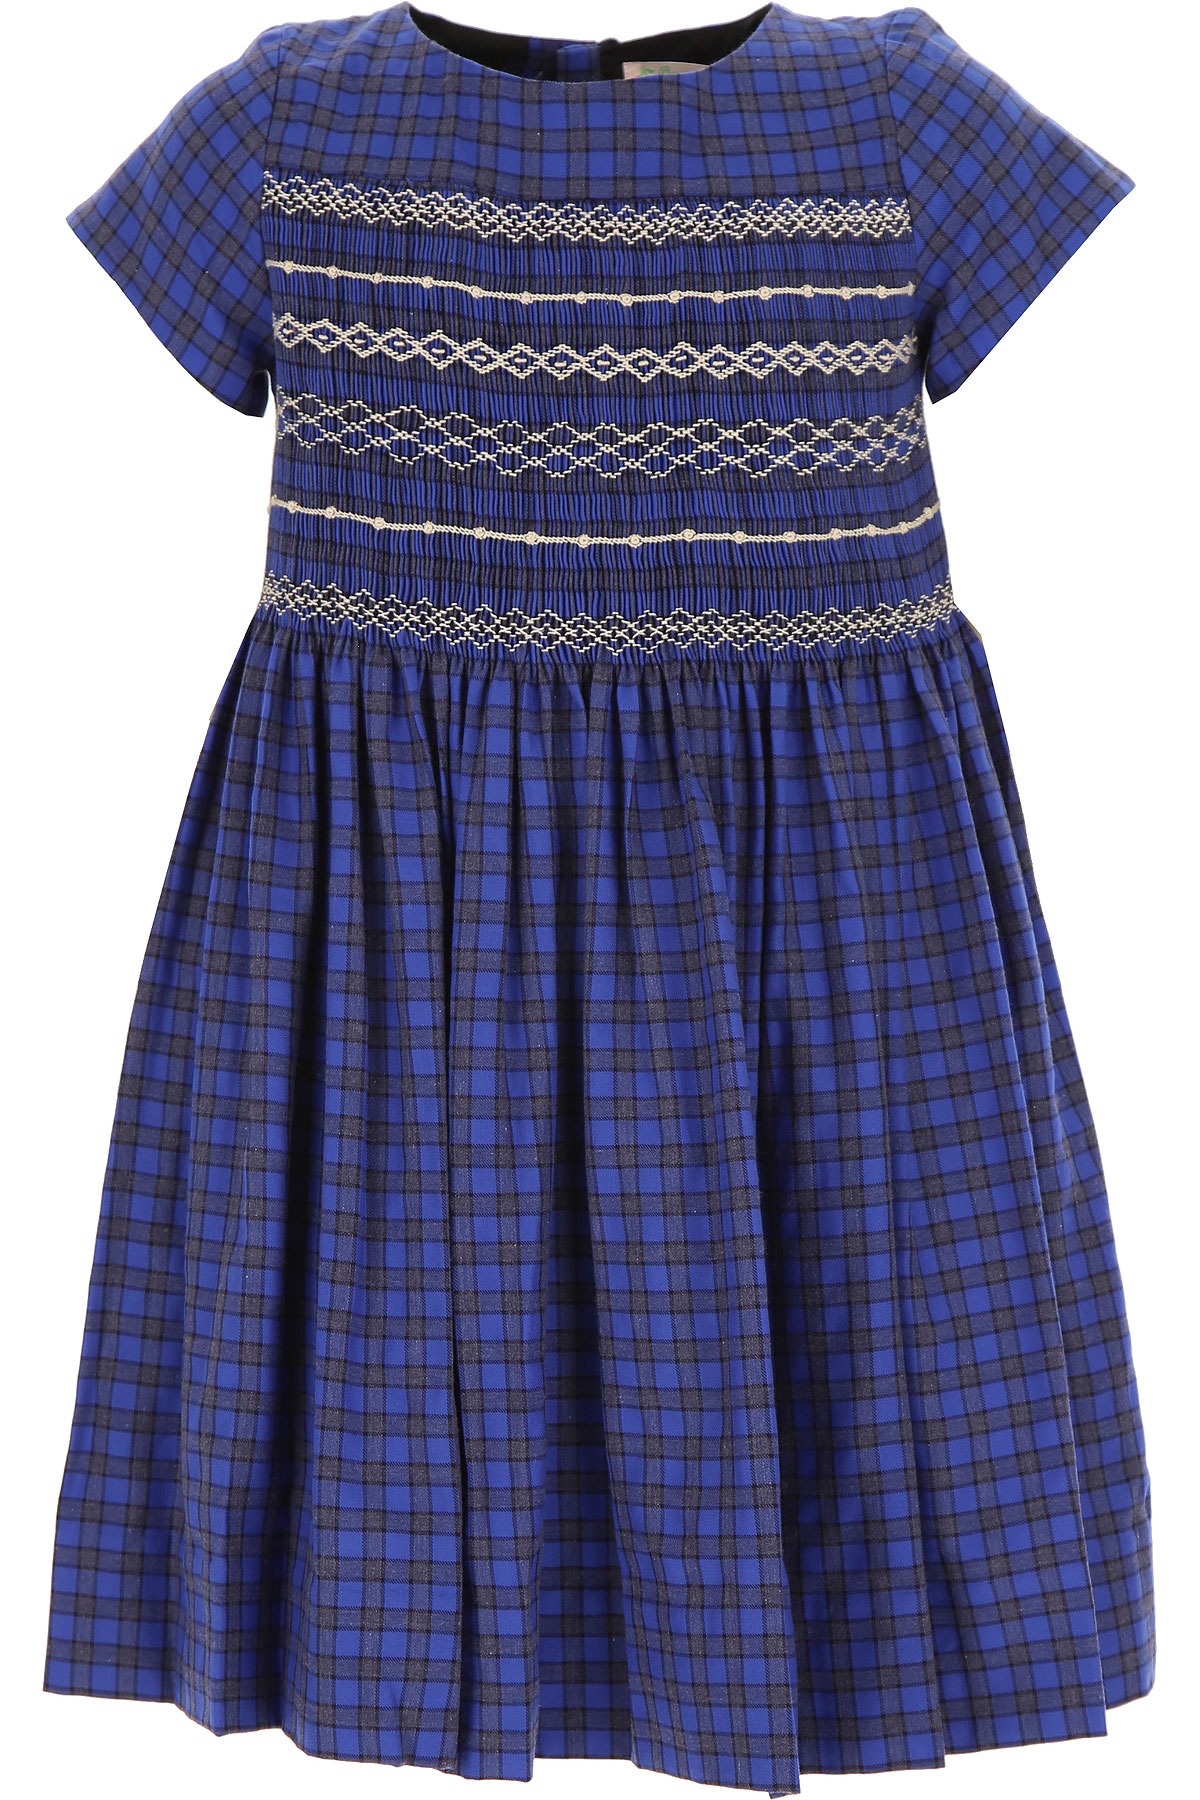 Bonpoint Kleid für Mädchen Günstig im Sale, Blau, Viskose, 2017, 4Y 6Y